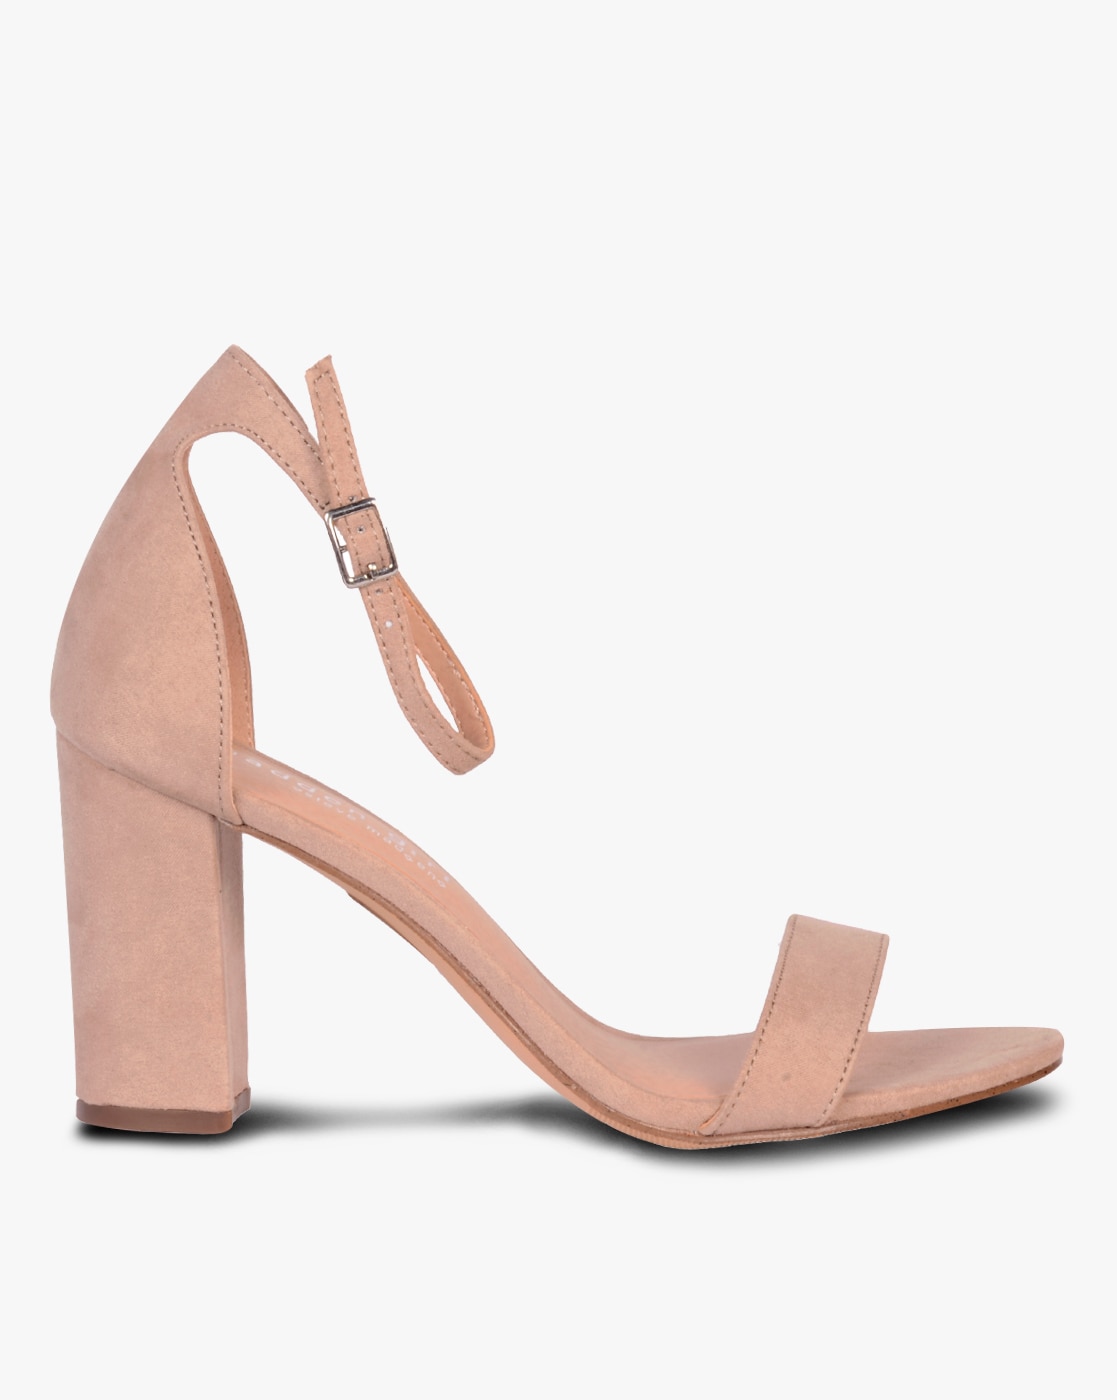 peach colour heels